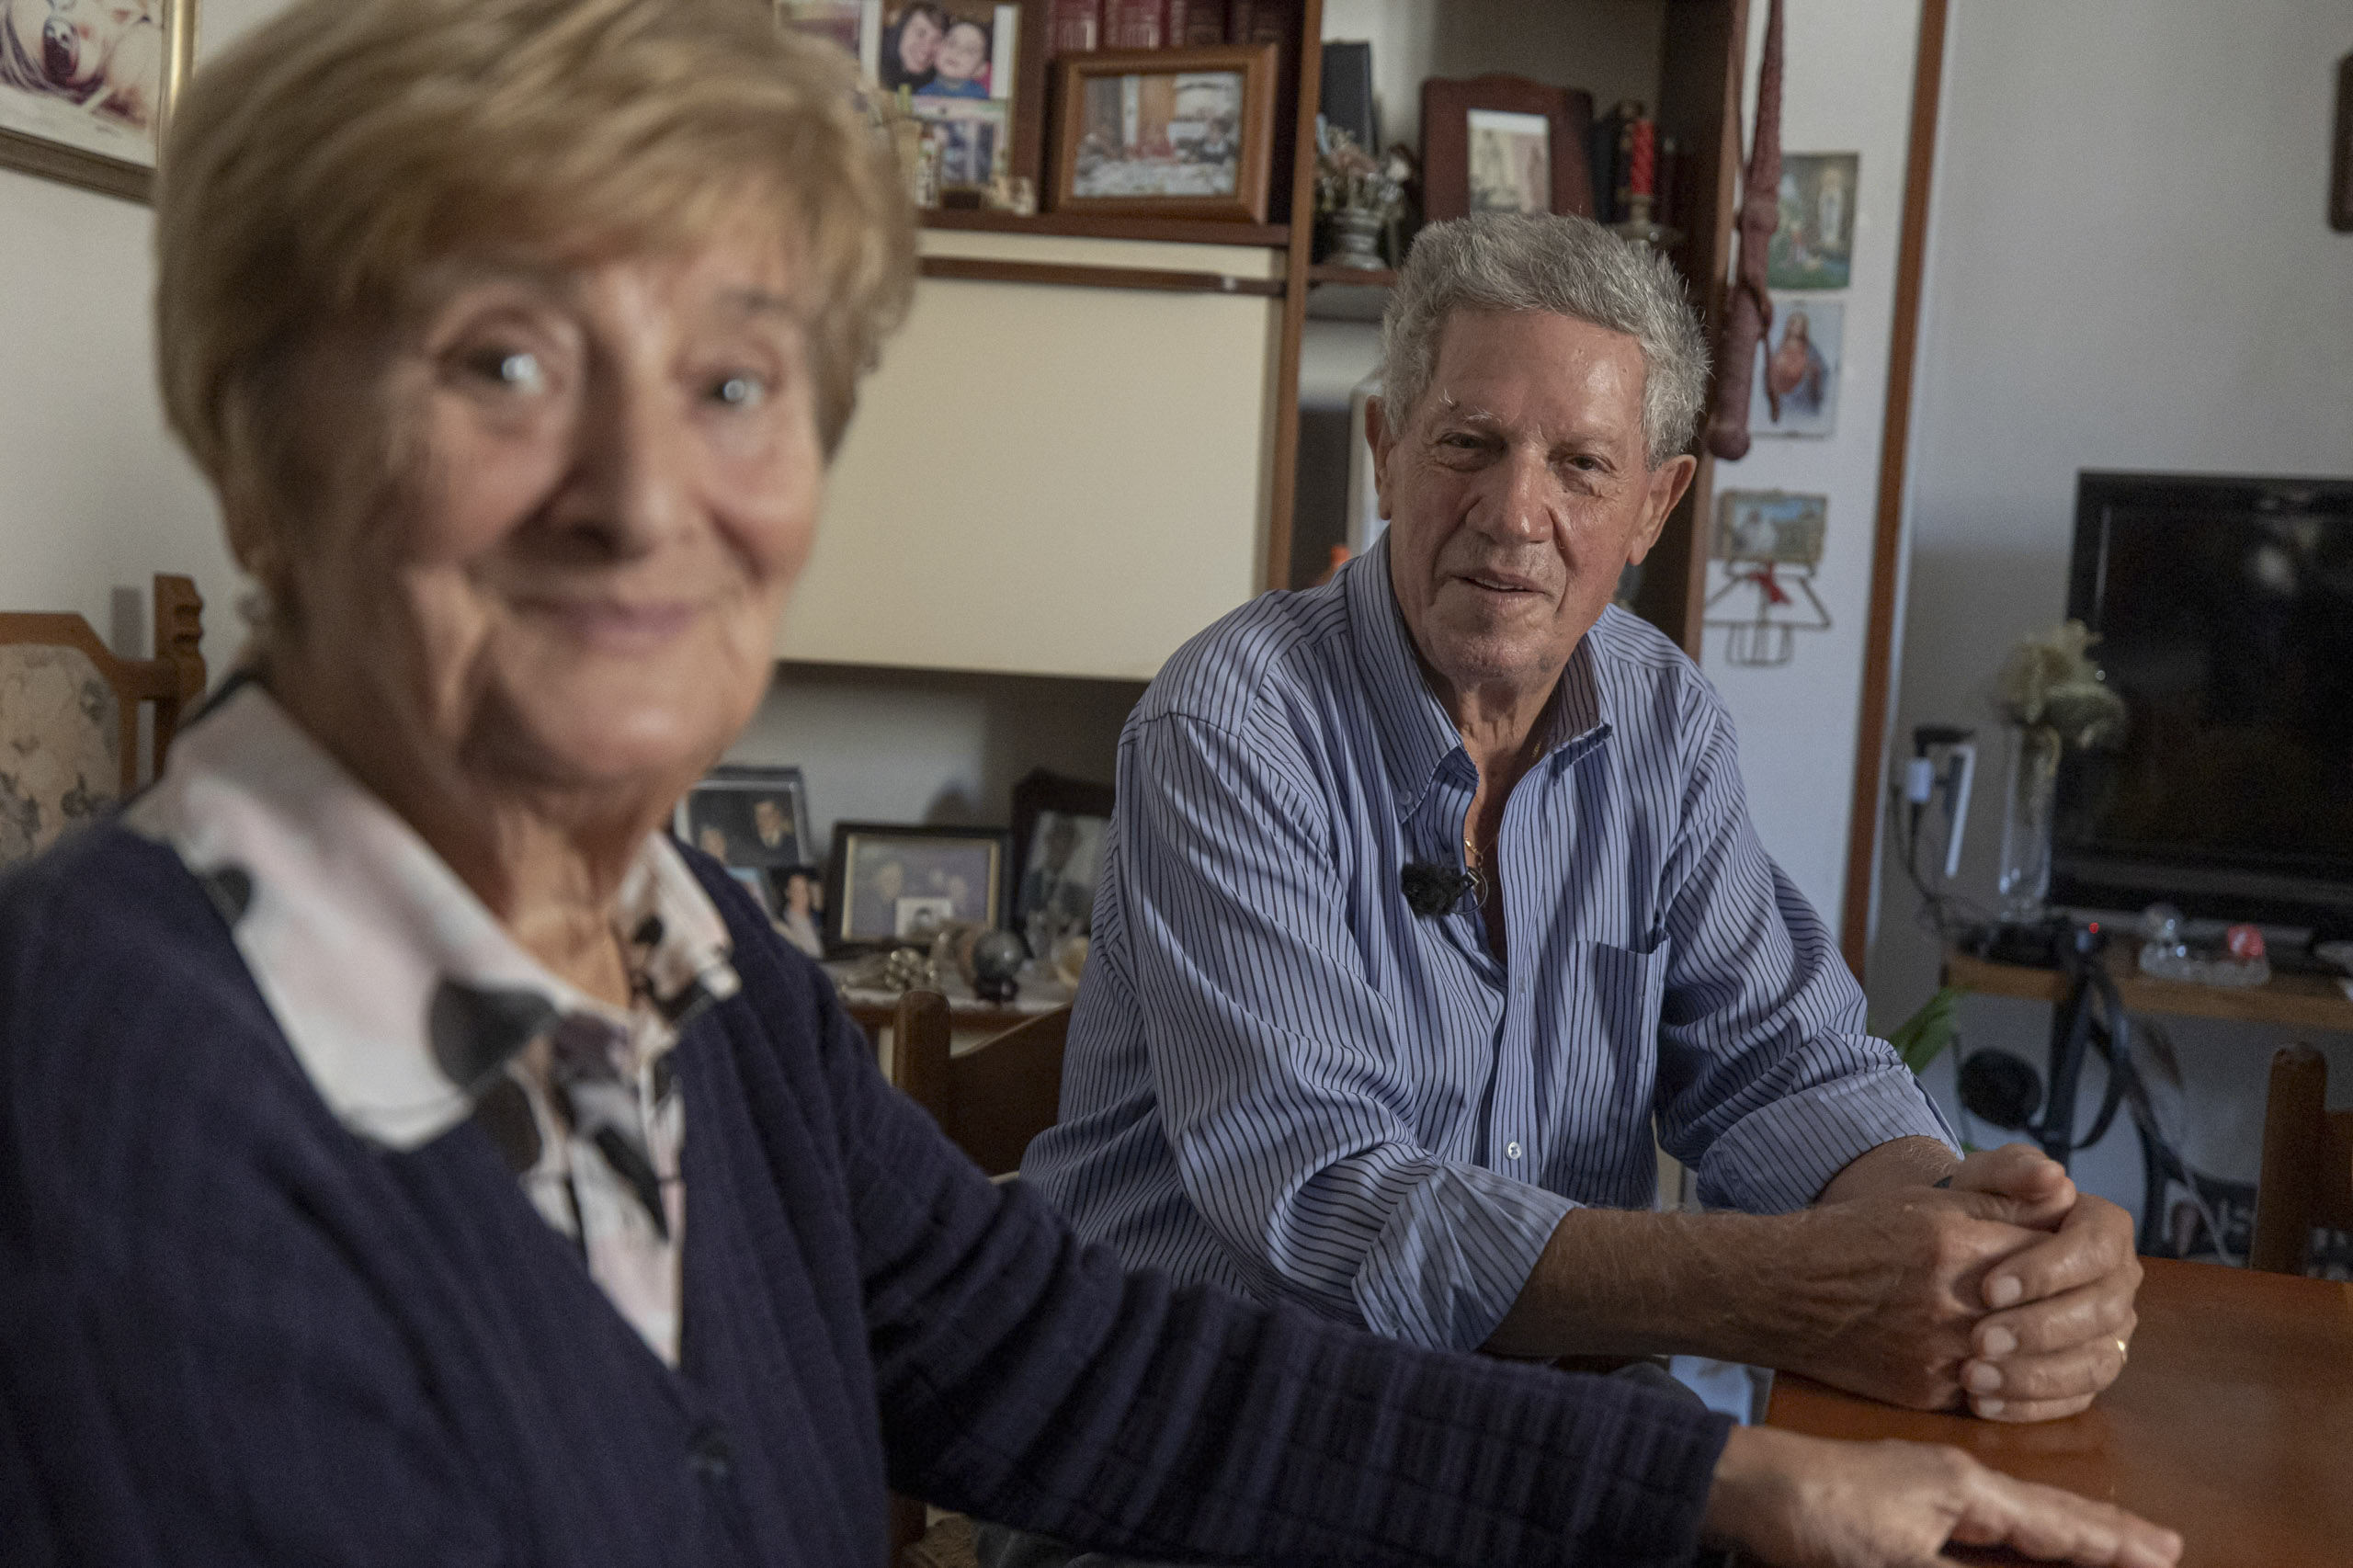 Eine ältere Frau und ein älterer Mann sitzen an einem Tisch, lächeln und halten sich an den Händen, umgeben von zahlreichen gerahmten Bildern und persönlichen Gegenständen in einem gemütlichen Raum. © Fotografie Tomas Rodriguez